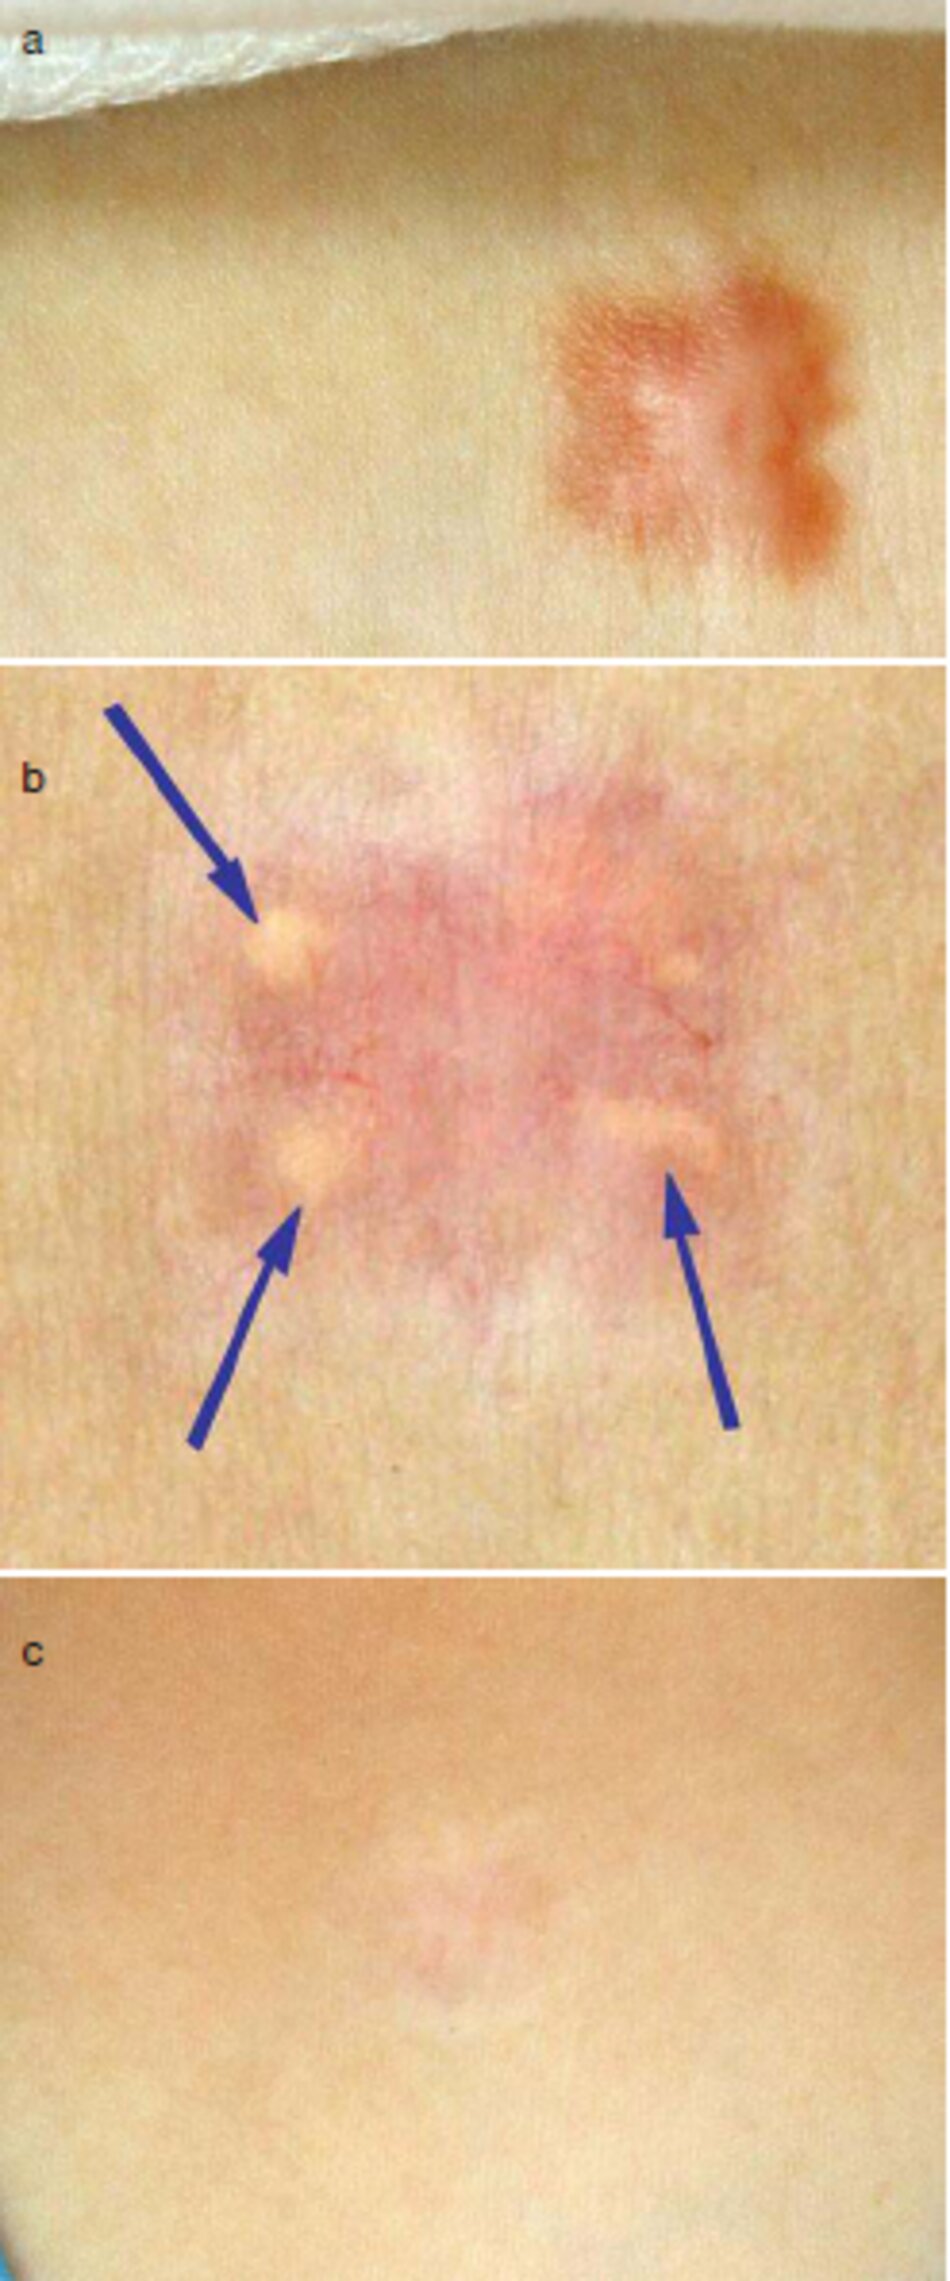 Fig. 2.28 Điều trị sẹo lồi với trong tổn thương corticosteroids, (a) Sẹo lồi. (b) u vàng, (c) Hồi quy tự phát (bằng mũi tên) của u vàng sau 8 tháng 